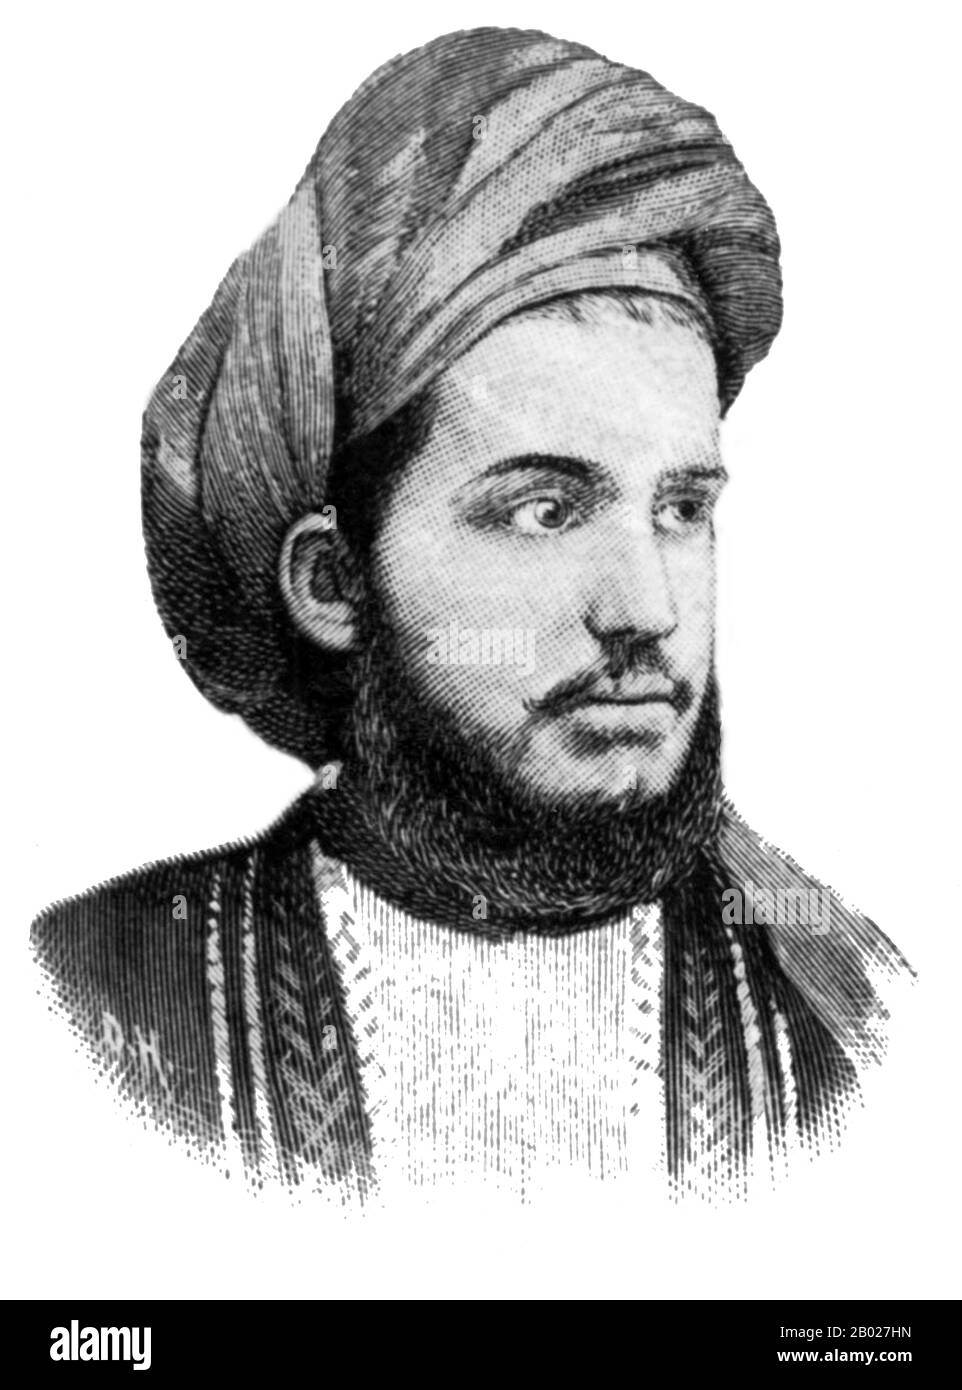 Sayyid Khalid bin Barghash Al-Bussaid (1874 – 1927) (arabe: خالد بن برغش البوسعيد‎) était le sixième sultan de Zanzibar et le fils aîné du deuxième sultan de Zanzibar, Sayyid Barghash bin A Dit Al-Bussaid. Khalid a brièvement gouverné Zanzibar (du 25 août au 27 août 1896), saisissant le pouvoir après la mort soudaine de son cousin Hamad bin Thuwaini de Zanzibar qui beaucoup de suspects a été empoisonné par Khalid. La Grande-Bretagne a refusé de reconnaître sa revendication au trône, citant un traité de 1866 qui a déclaré qu'un nouveau sultan ne pouvait adhérer au trône qu'avec la permission britannique, entraînant la guerre anglo-Zanzibar Banque D'Images